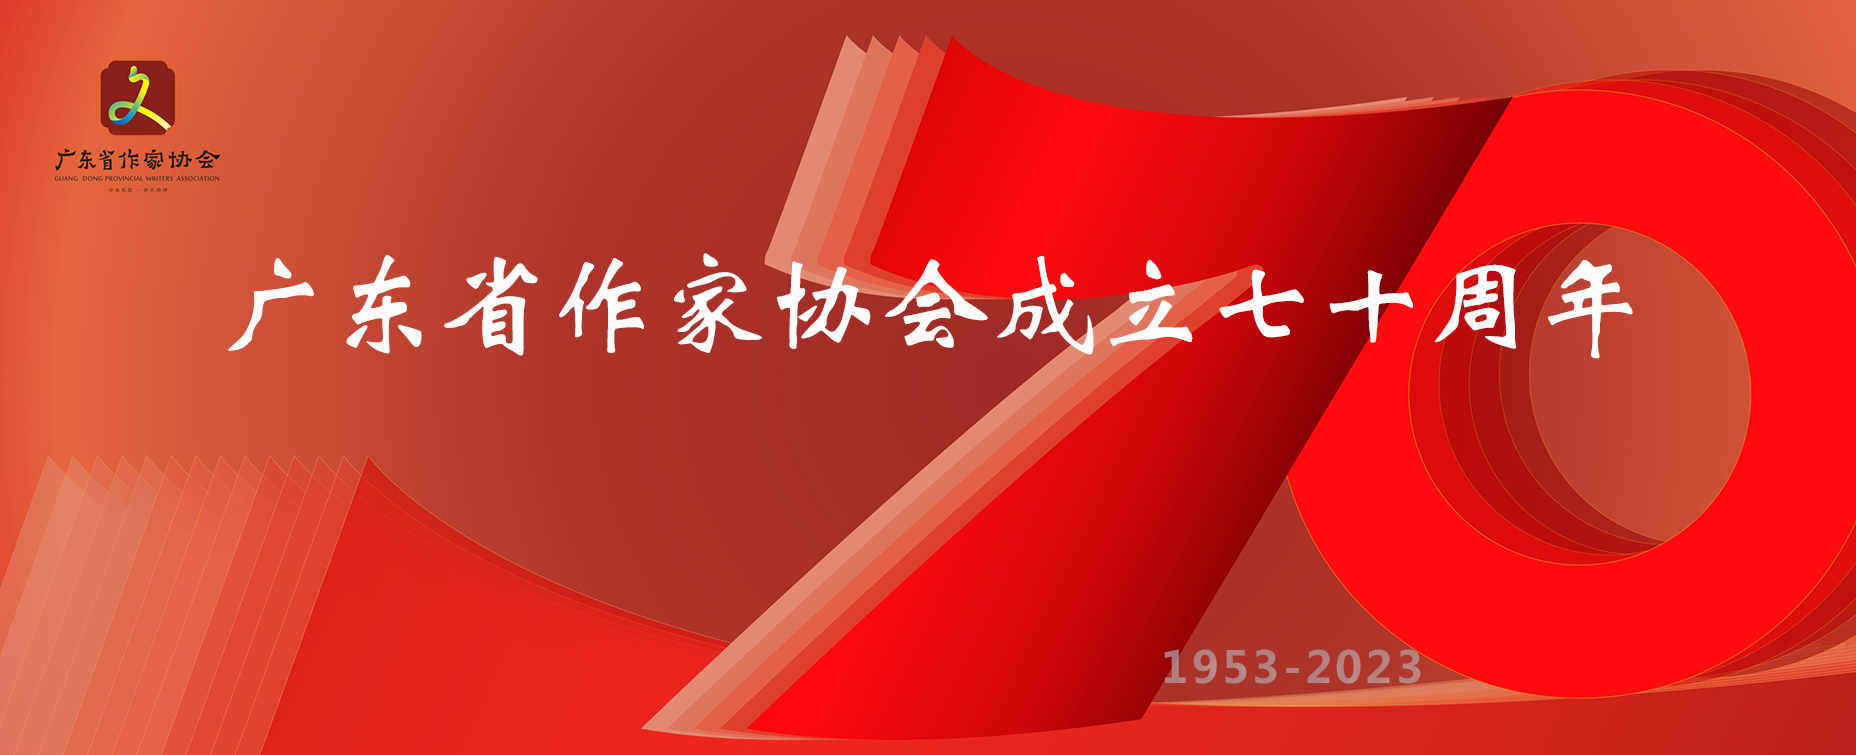 致广东省作家协会成立70周年的贺信、贺词（三）